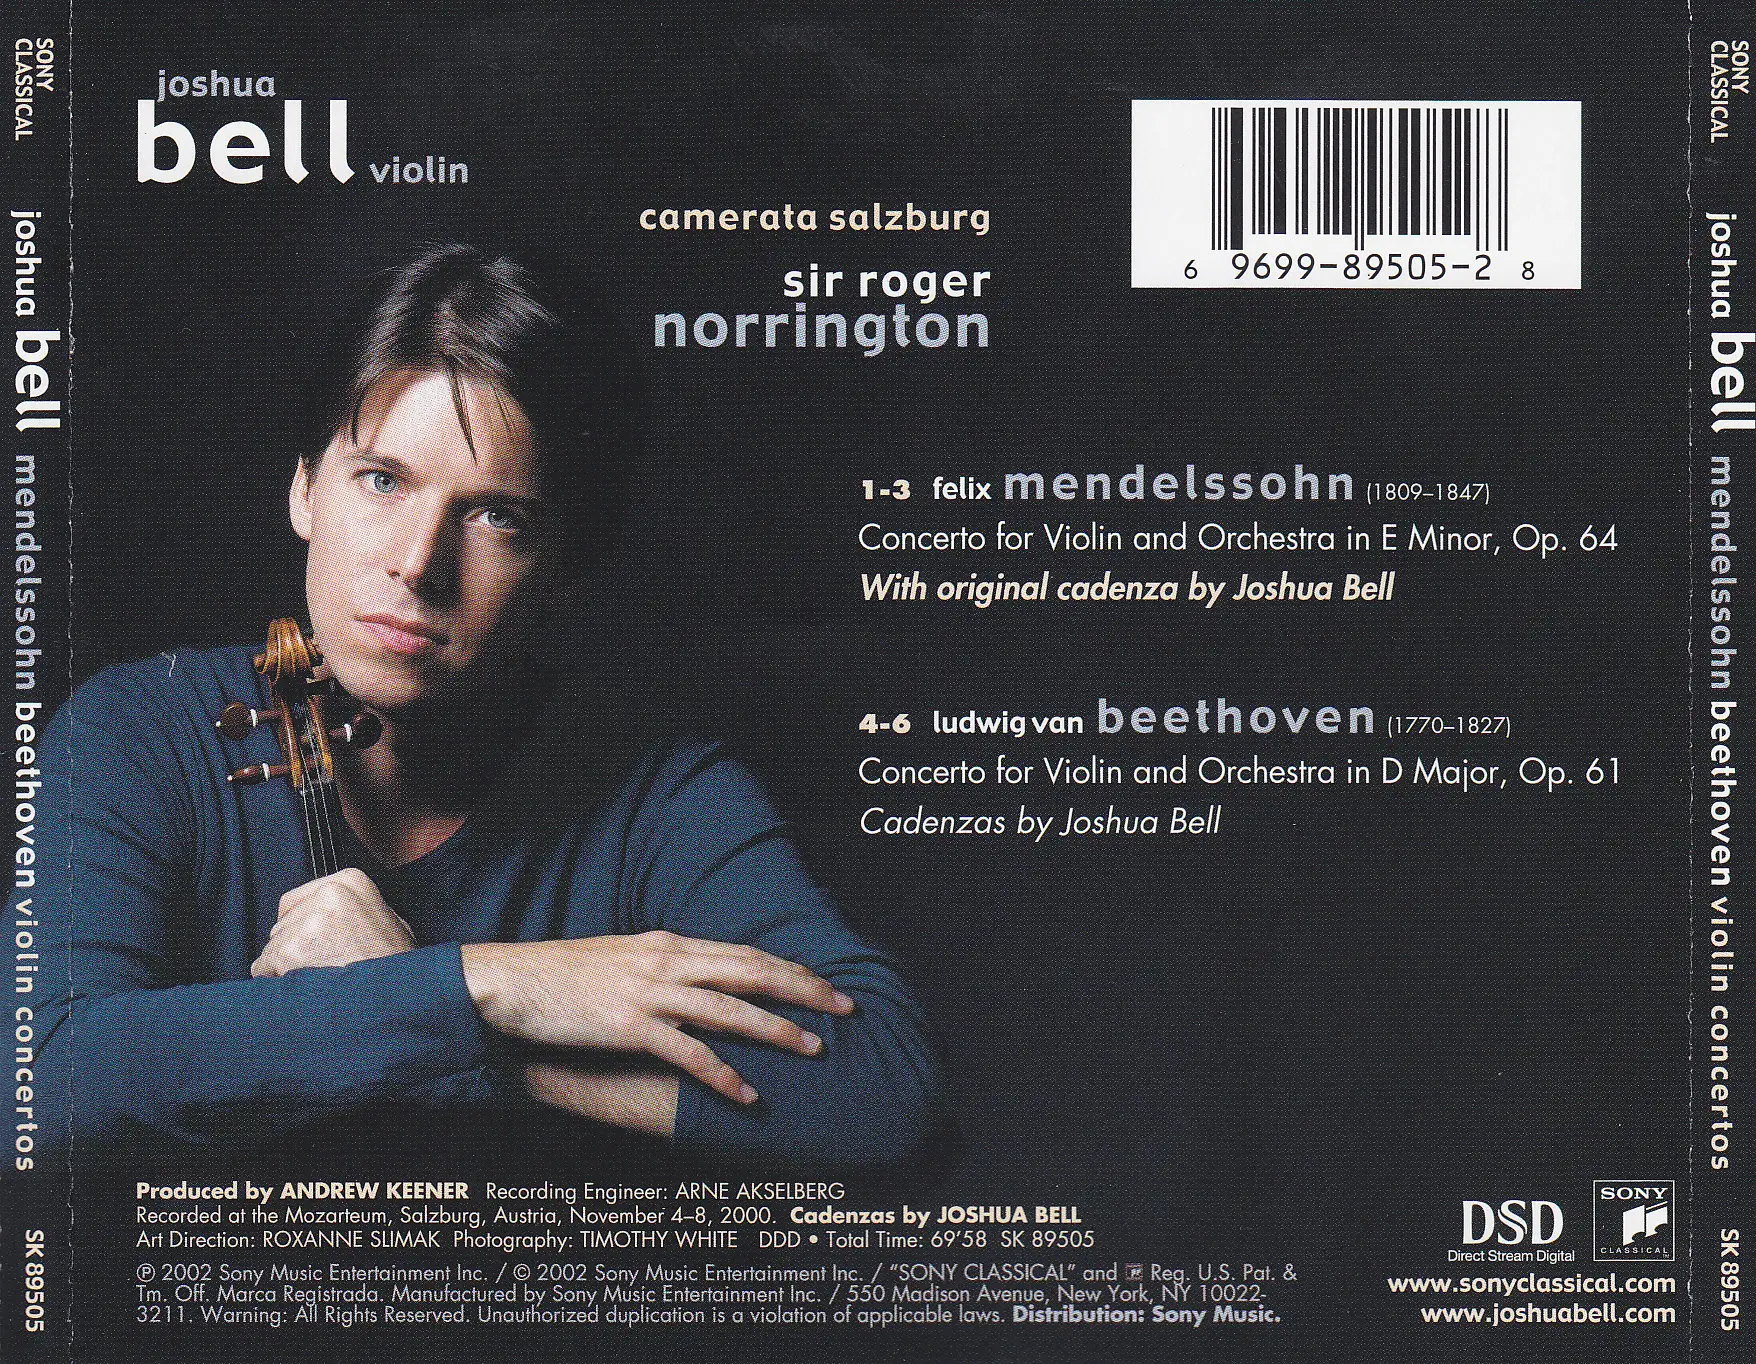 Embertone - Joshua Bell Violin. Joshua Bell Violin Kontakt. Joshua violin